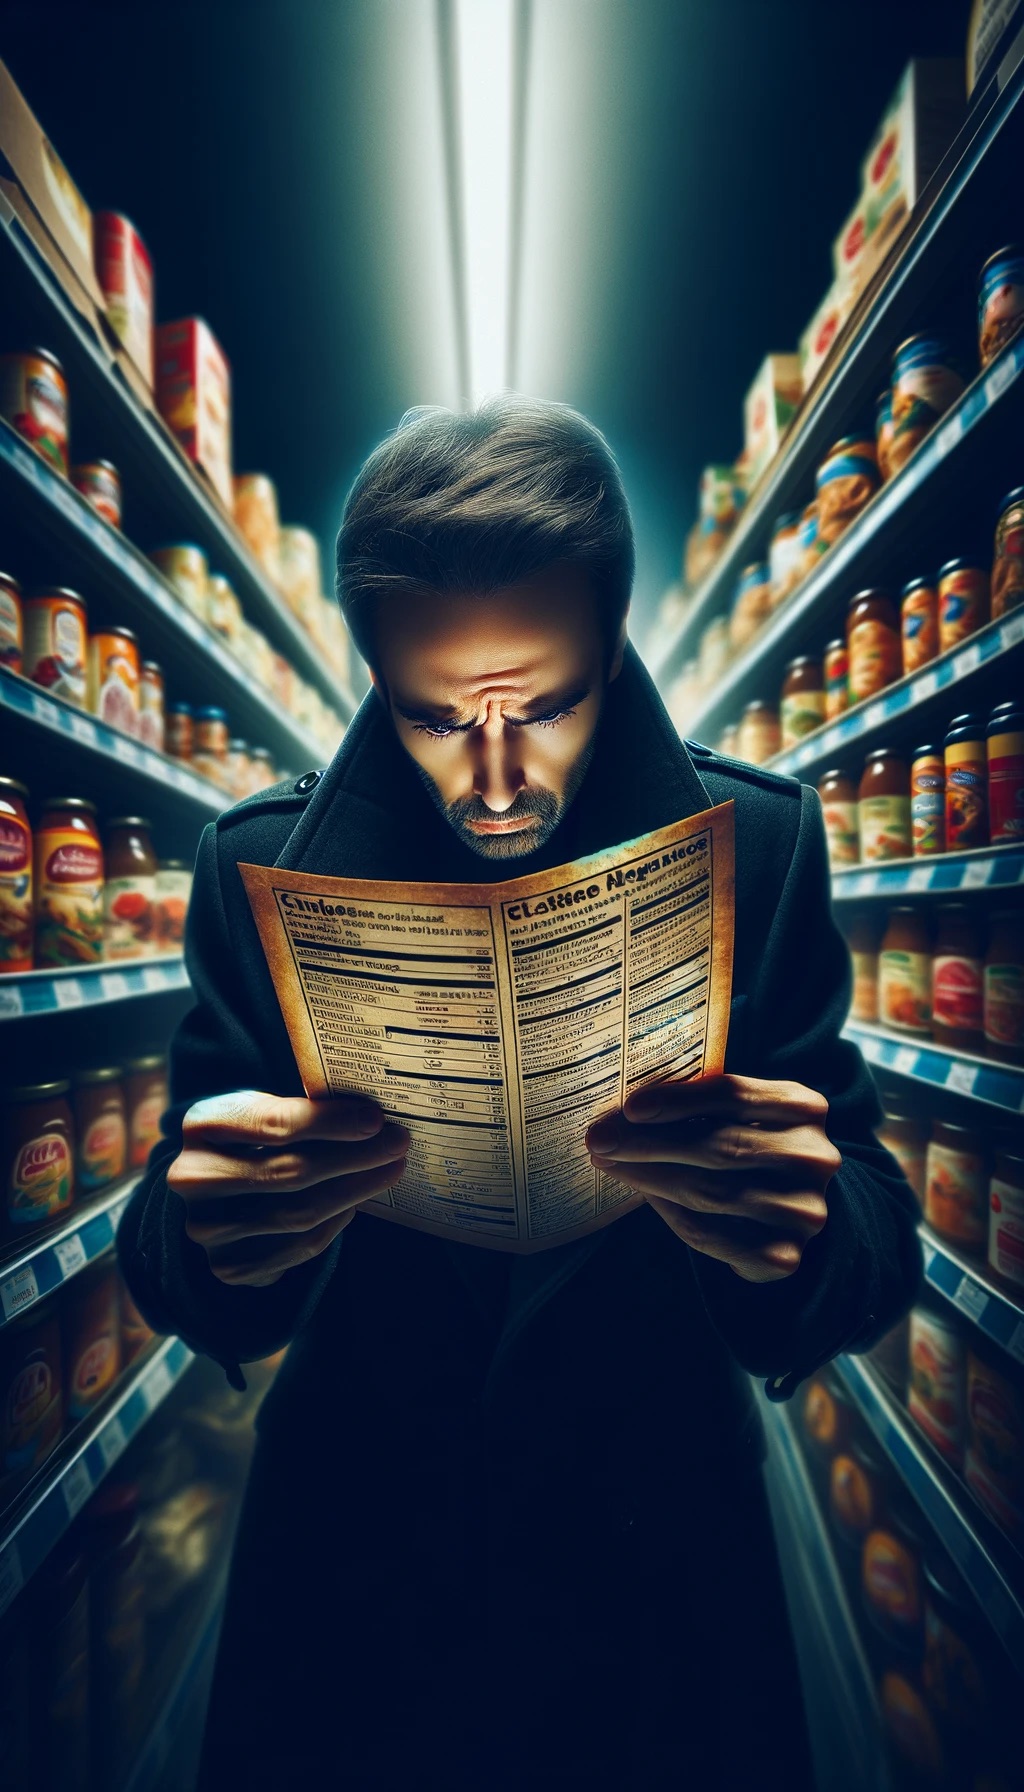 Eine Person liest sorgfältig Lebensmitteletiketten in einem Supermarkt, umgeben von einem Ausdruck von Sorge und Vorsicht aufgrund von Lebensmittelallergien.